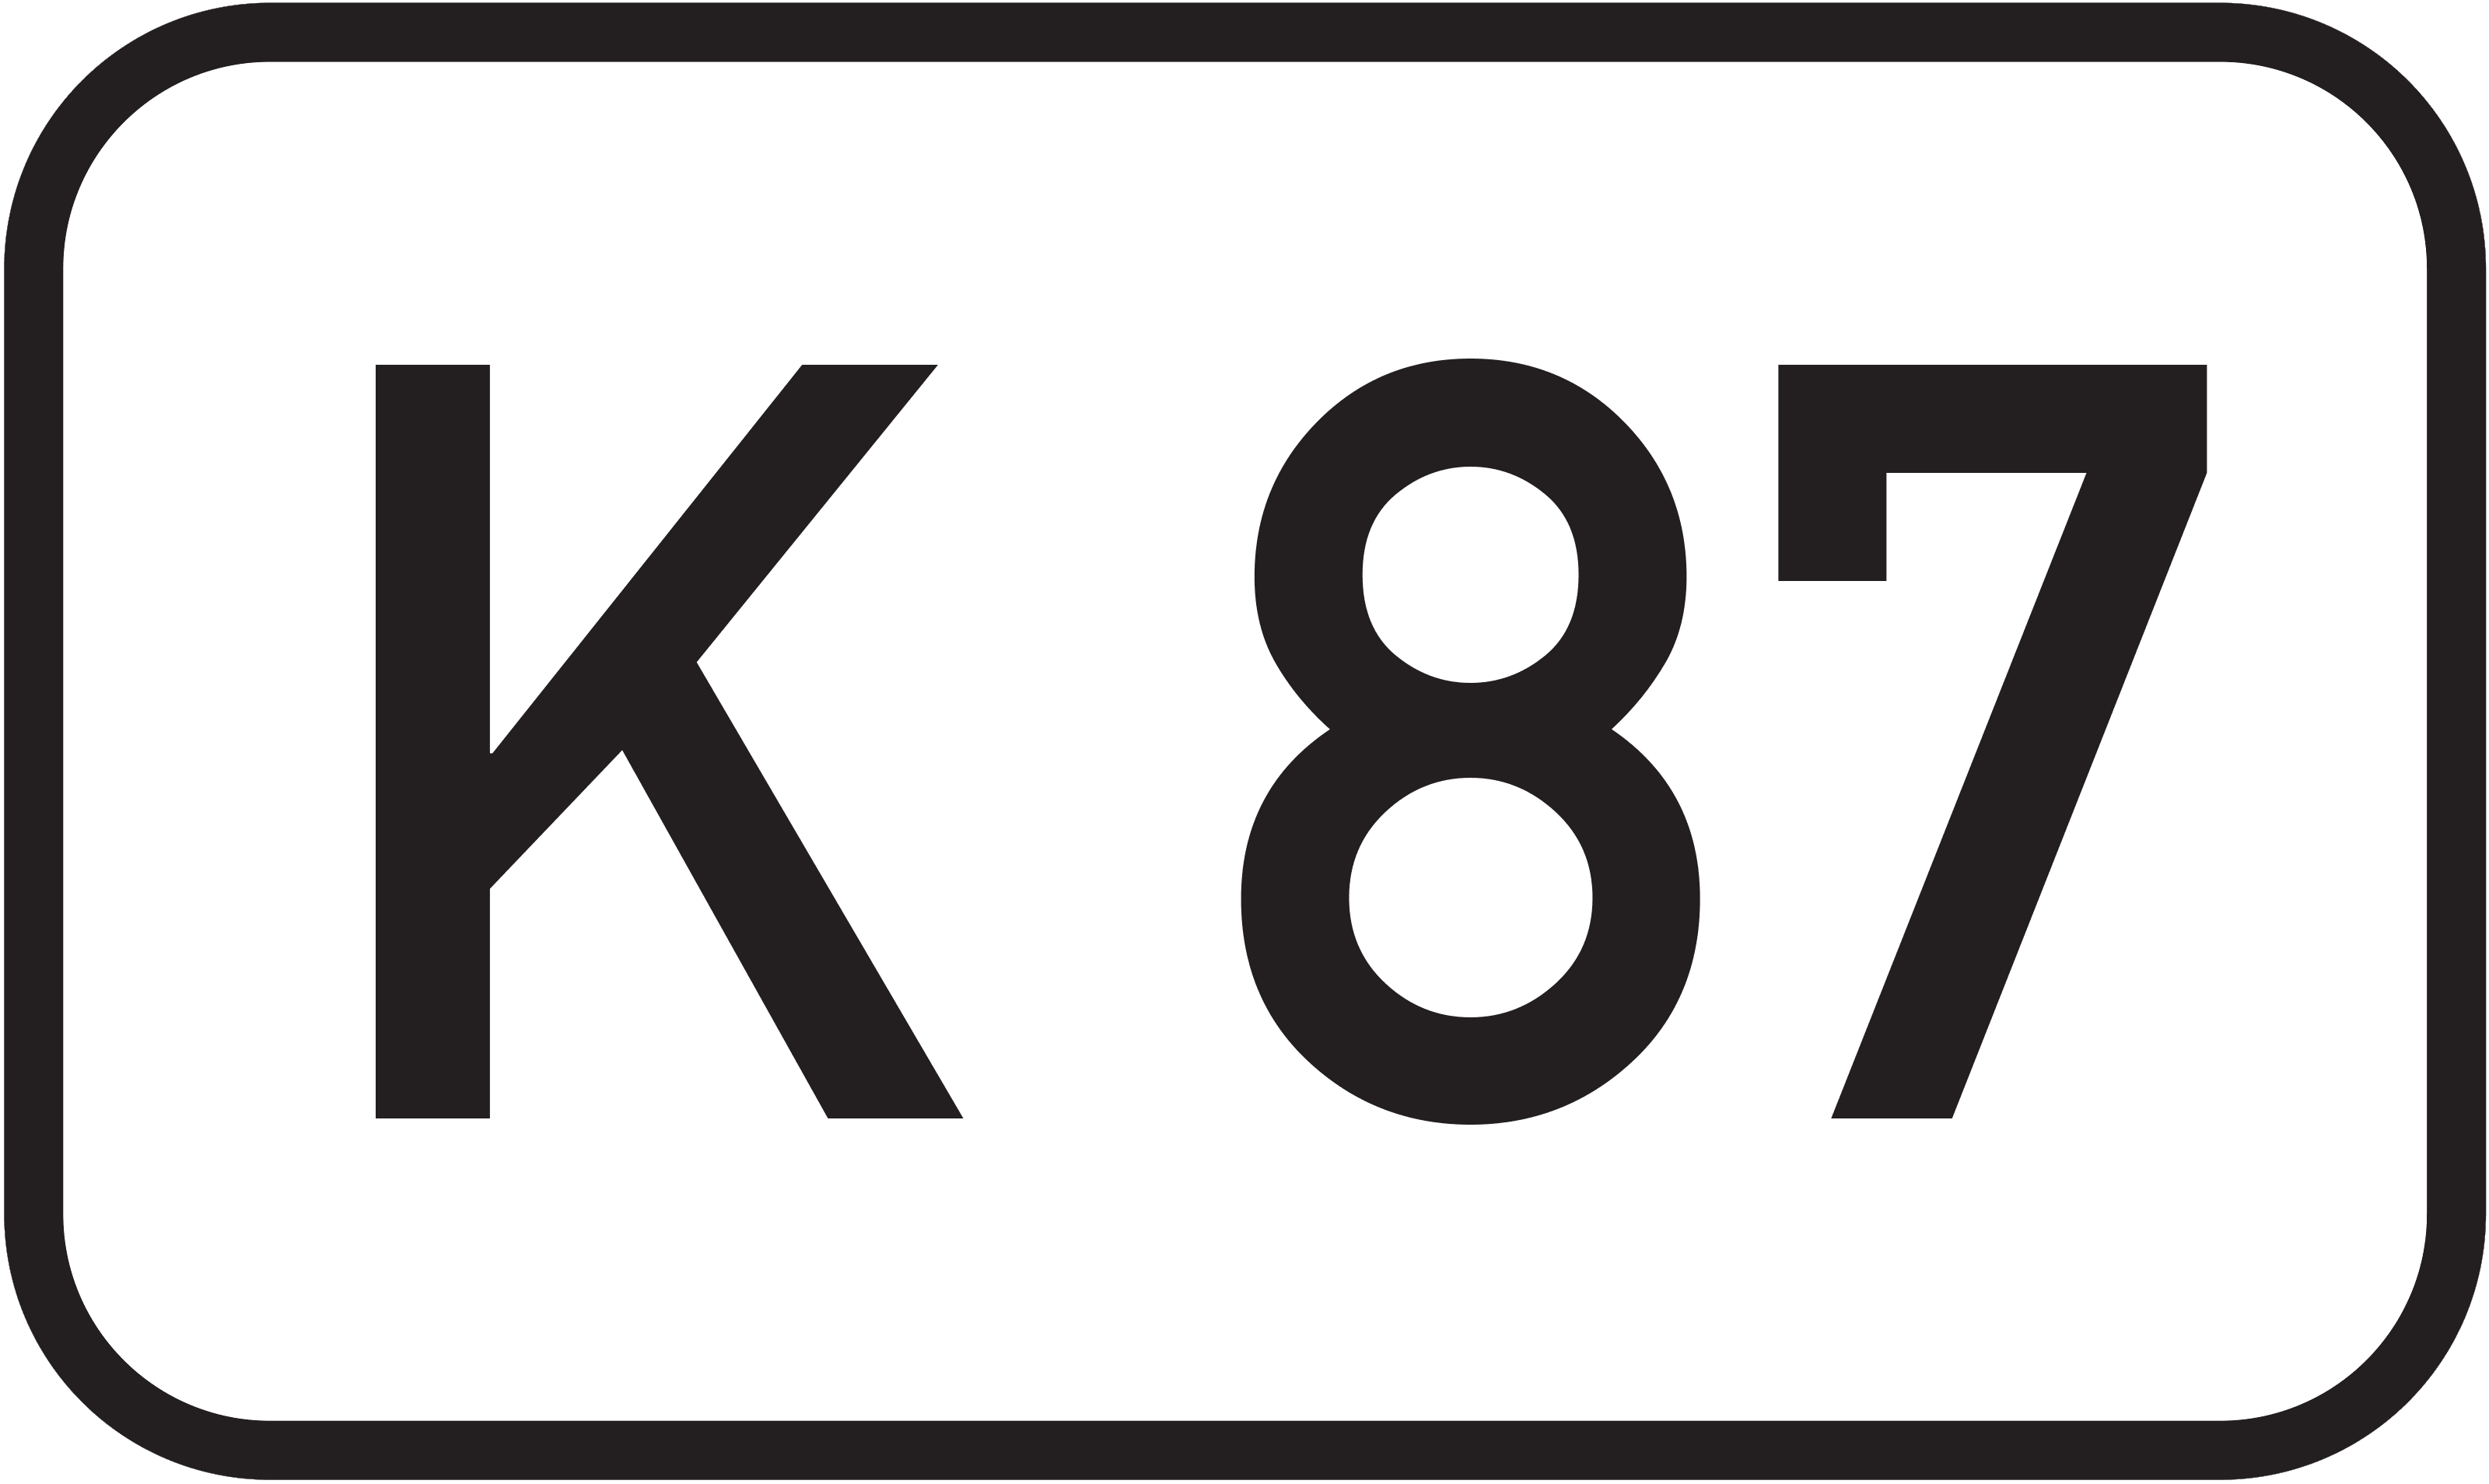 Bundesstraße K 87